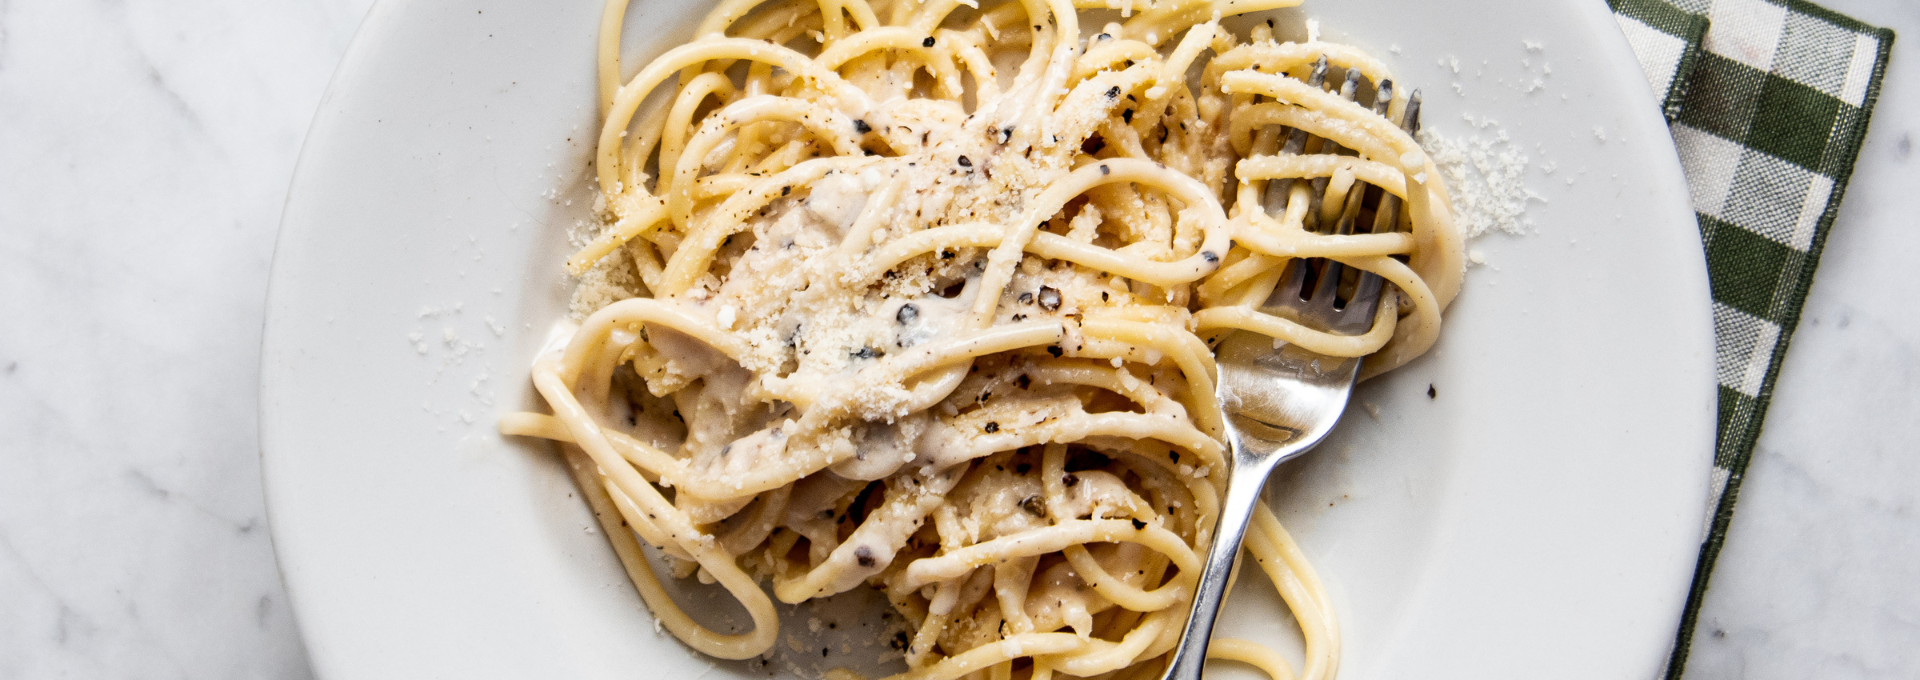 Spaghetti cacio e pepe: origini della ricetta e curiosità